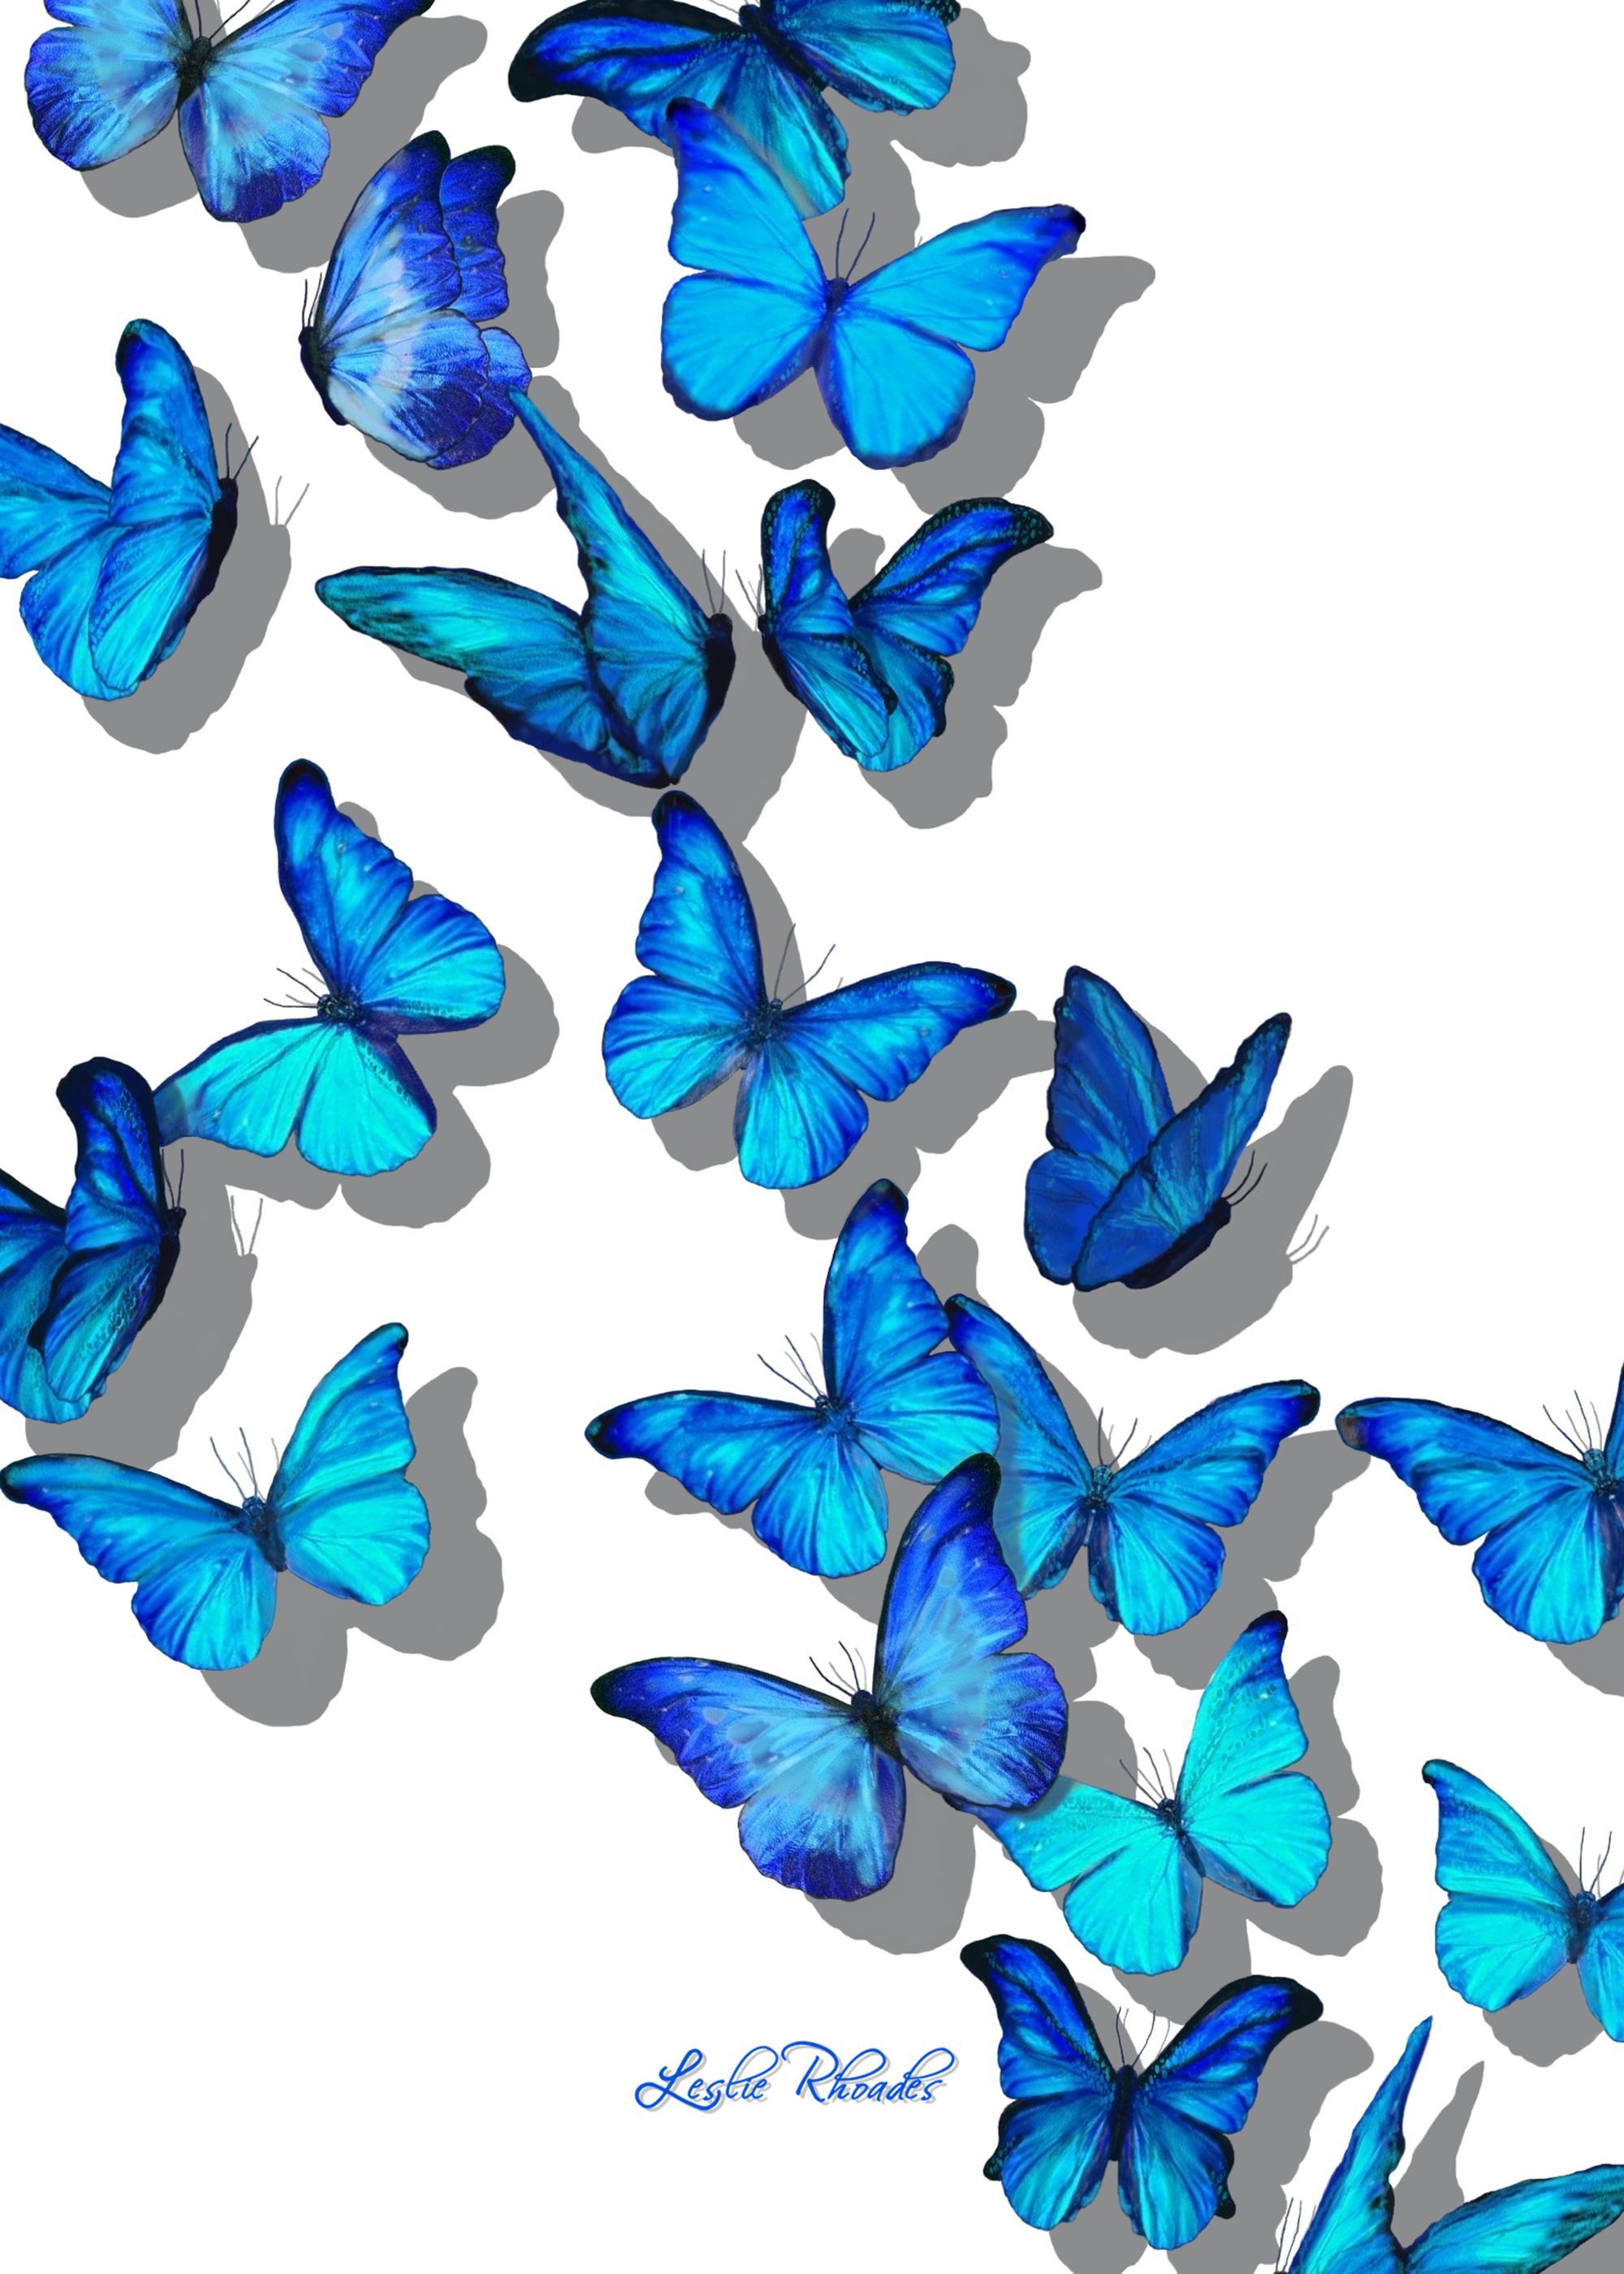 Butterfly Blanket digital artFine Art by Leslie Rhoades AKA